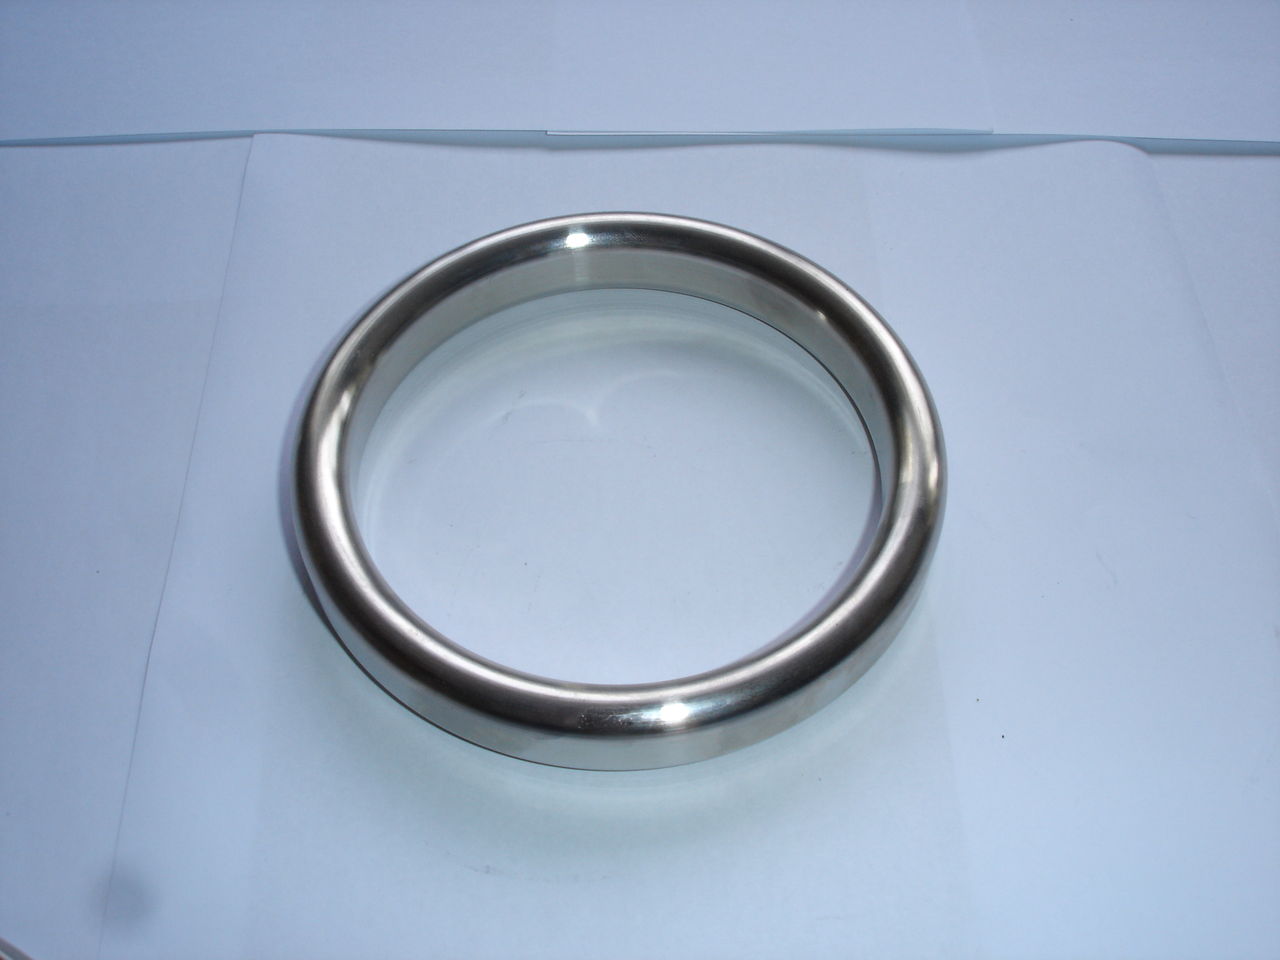 金属环垫金属环形垫片是一种用于容器密封的金属零件,其截面形状为